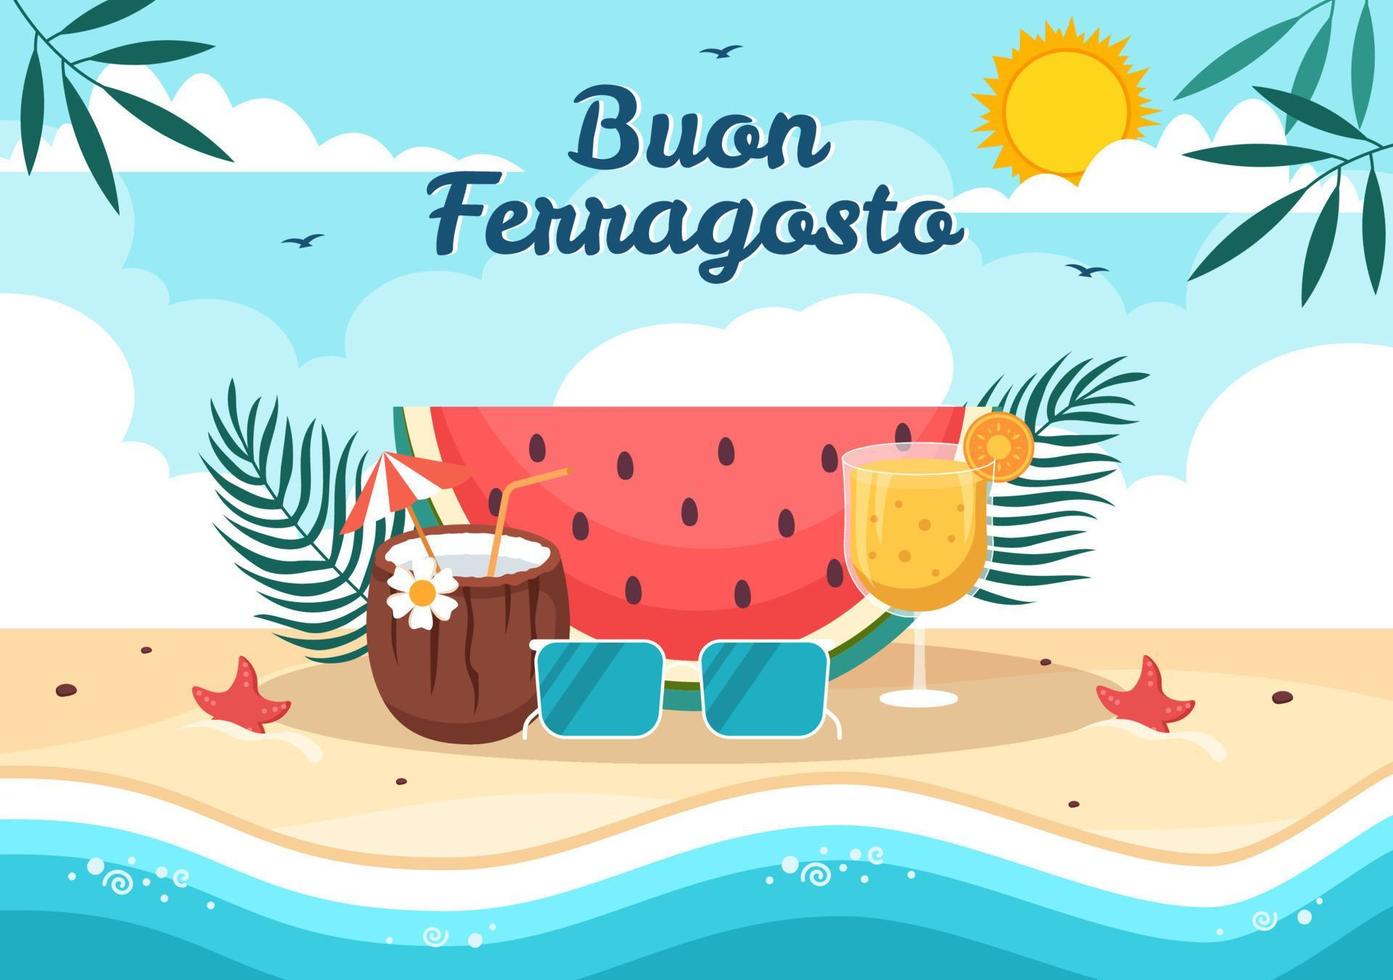 festival de verão italiano buon ferragosto na ilustração dos desenhos animados de praia no feriado comemorado em 15 de agosto em design de estilo simples vetor